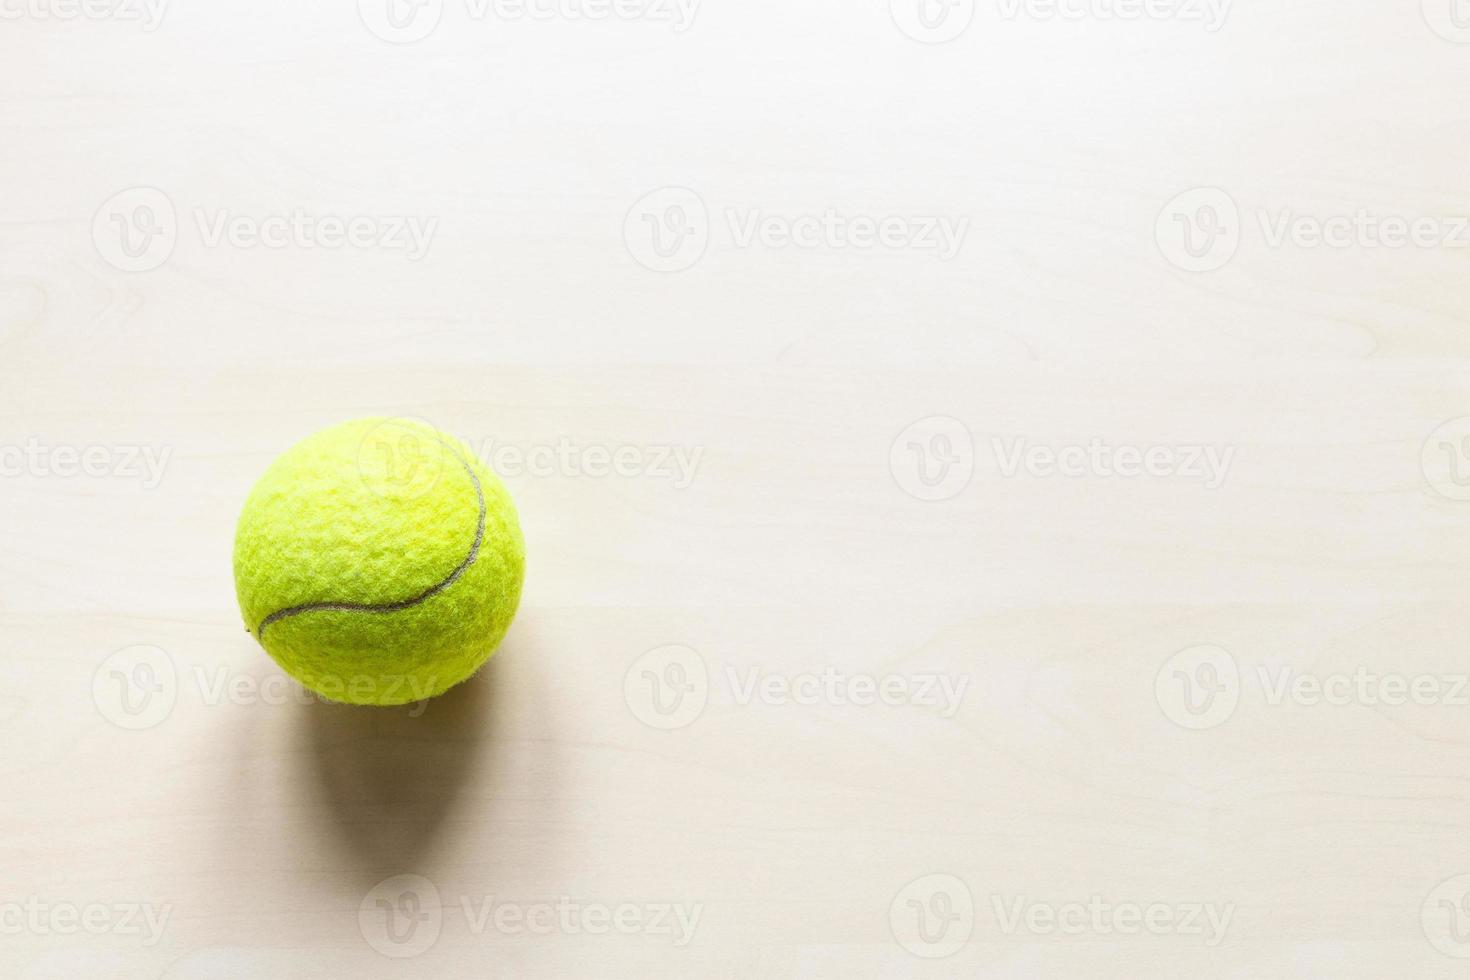 f bola de tênis na placa de madeira marrom clara foto